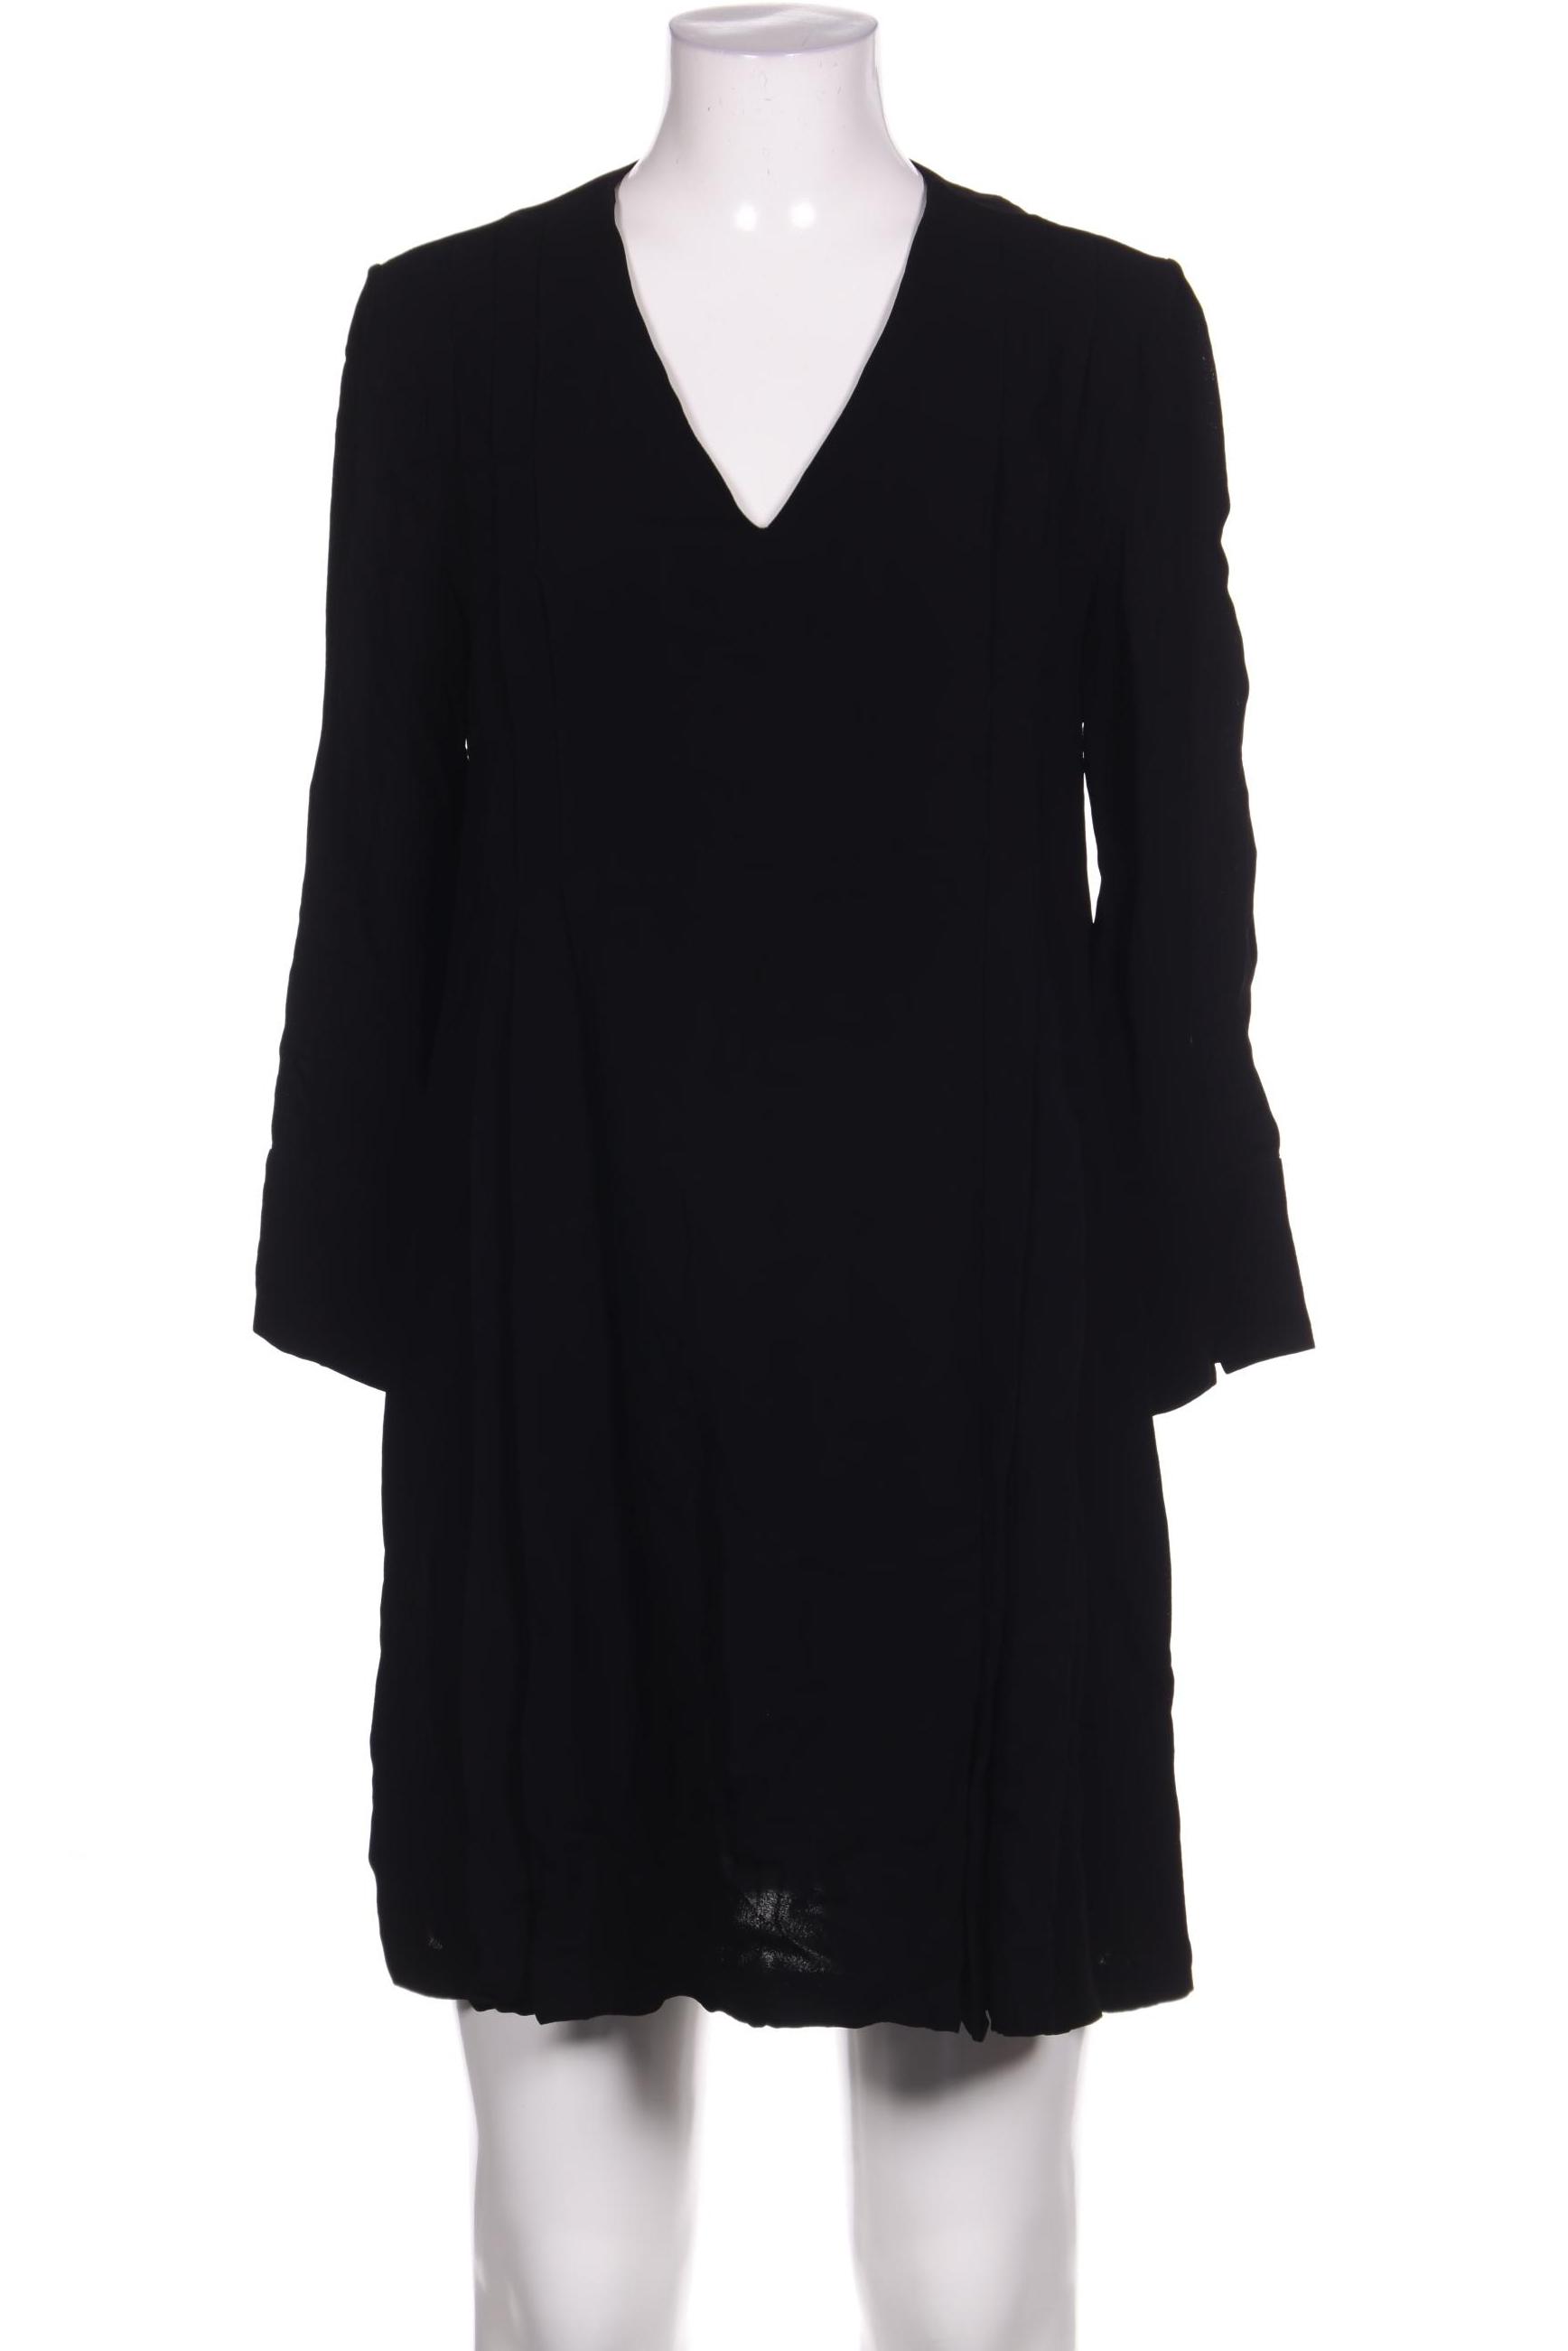 Massimo Dutti Damen Kleid, schwarz von Massimo Dutti